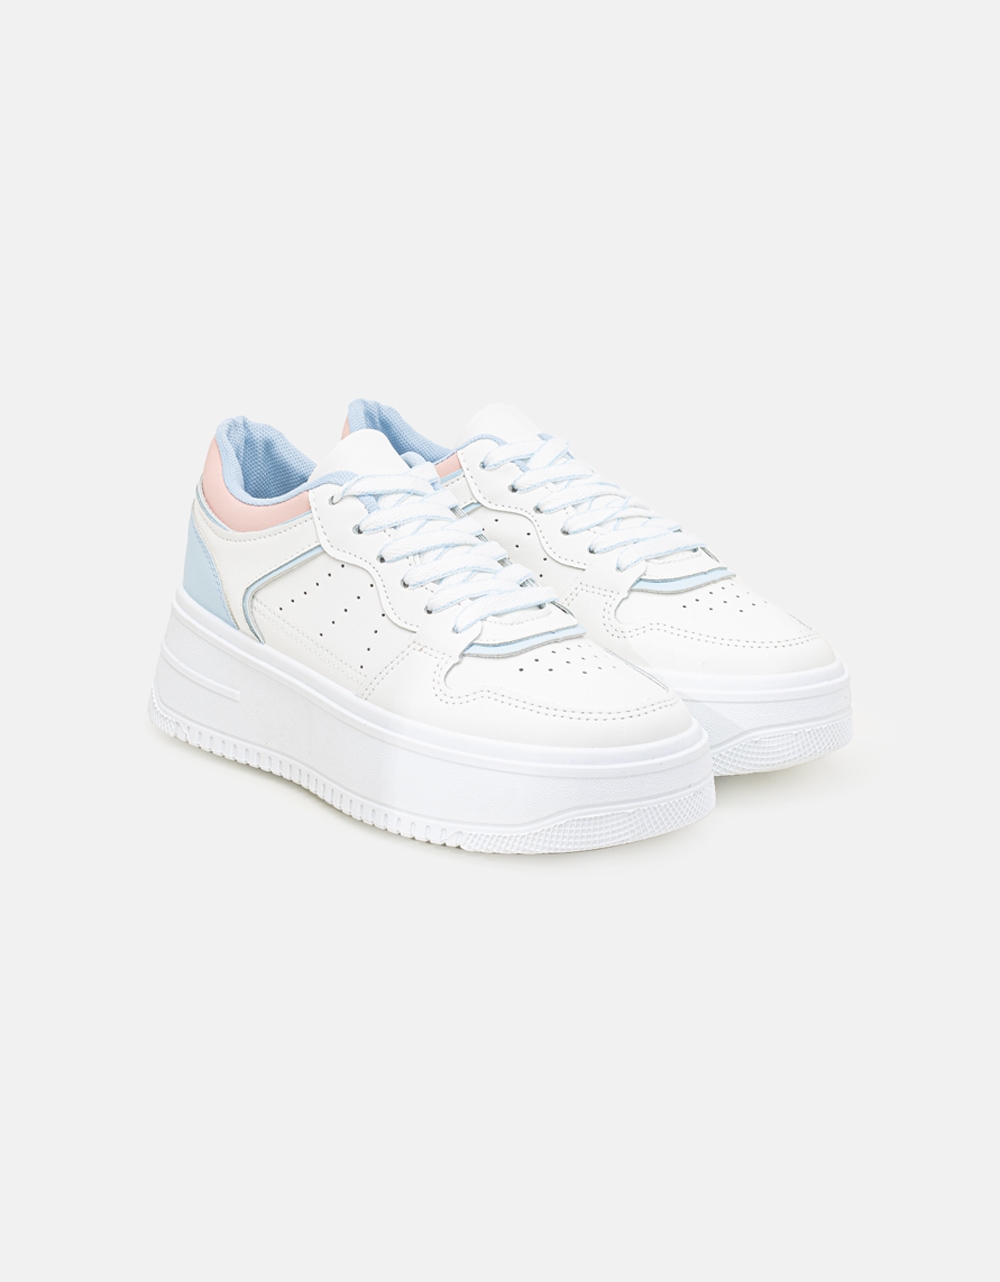 Εικόνα από Γυναικεία sneakers με διπλή σόλα και διάτρητο σχέδιο Λευκό/Μπλε